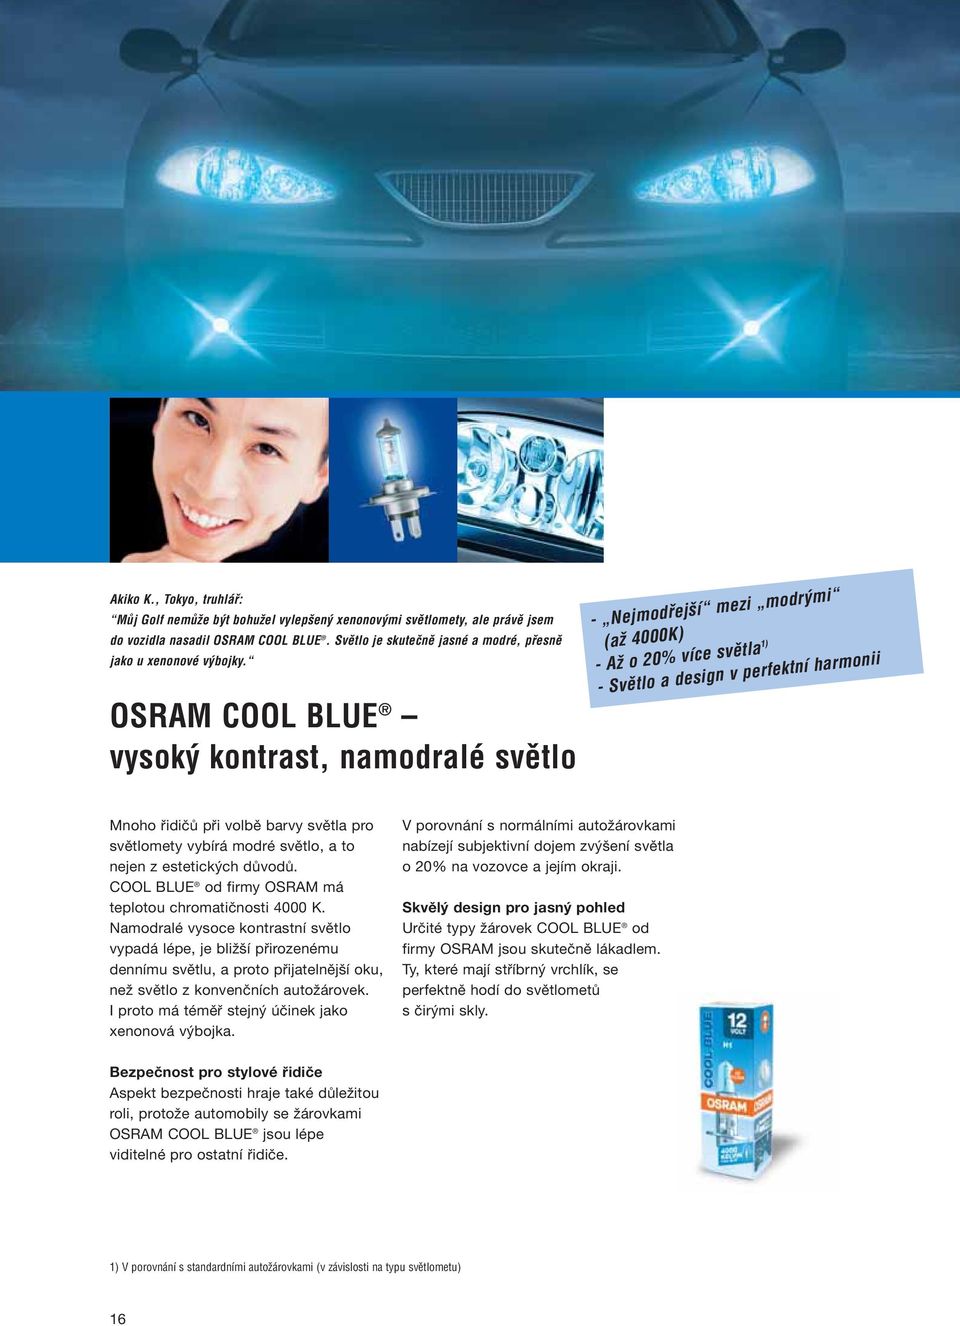 OSRAM COOL BLUE vysok kontrast, namodralé svûtlo - Nejmodfiej í mezi modr mi (aï 4000K) - AÏ o 20% více svûtla 1) - Svûtlo a design v perfektní harmonii Mnoho řidičů při volbě barvy světla pro